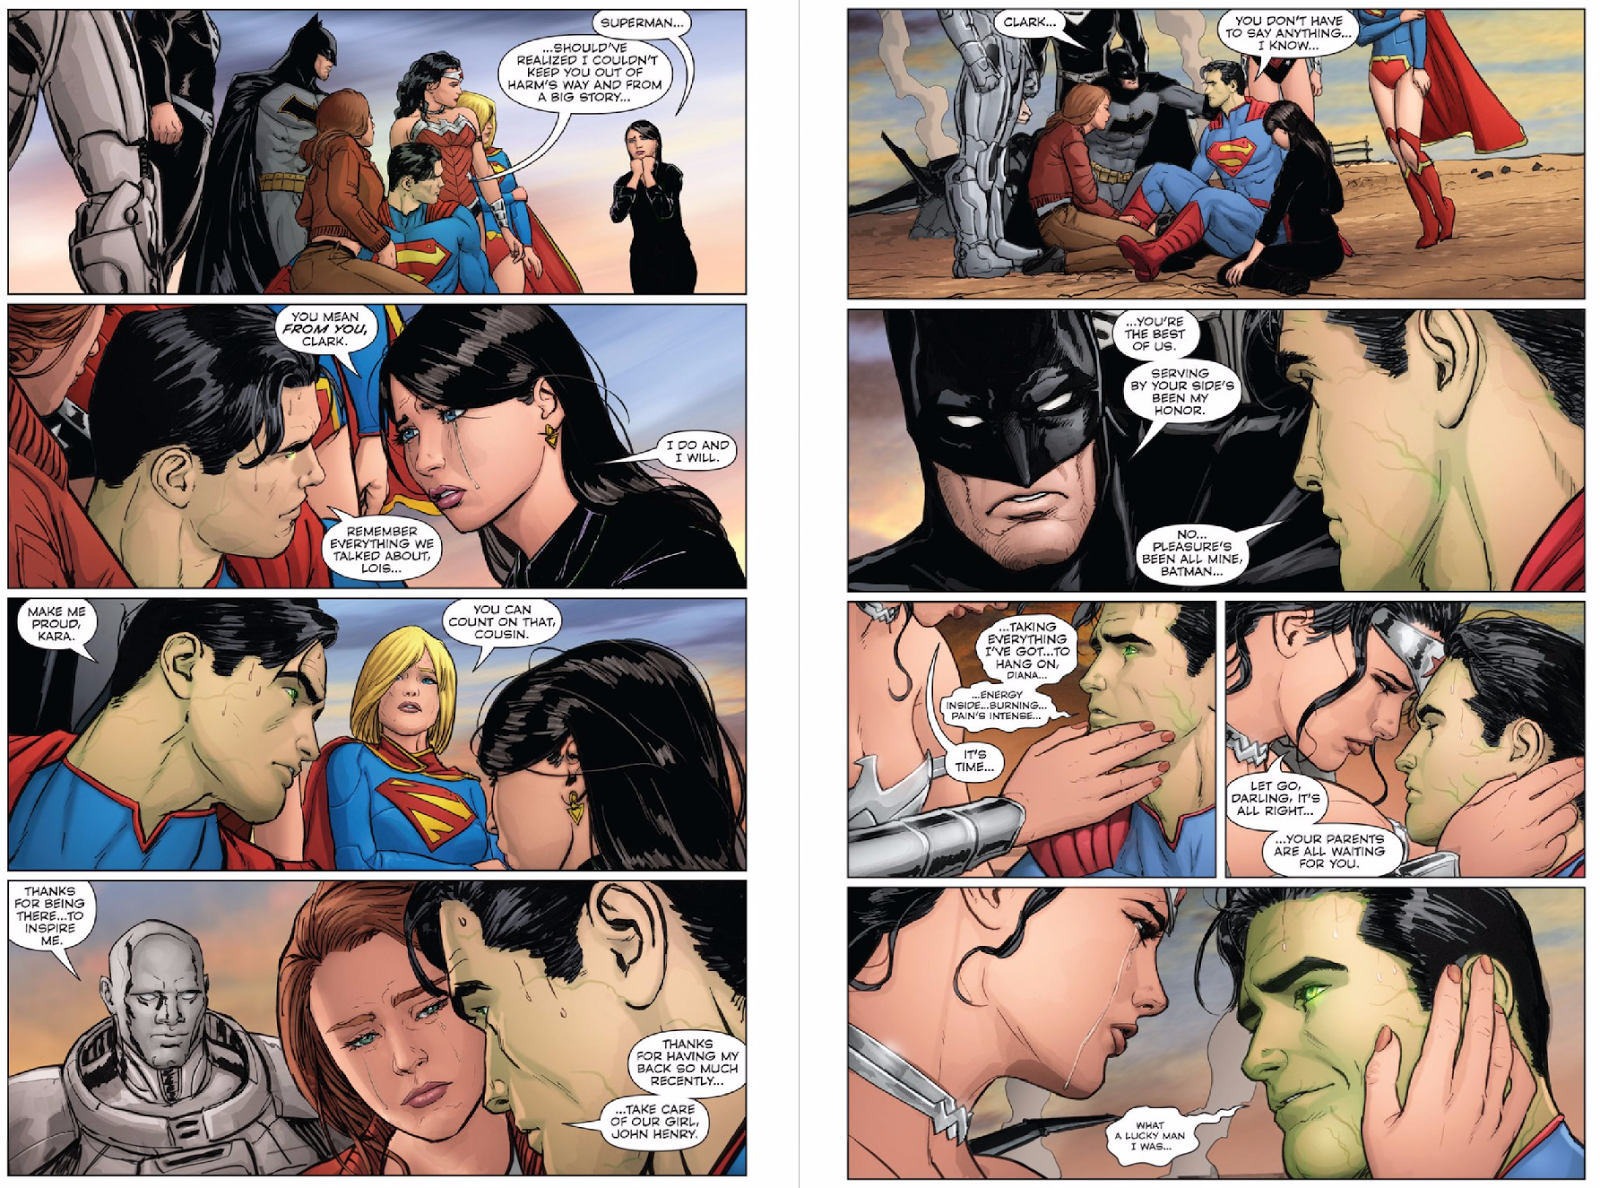 42 - [DC Comics] Superman: Discusión General - Página 10 Mtmc7v8ujjeuu7woe7ue